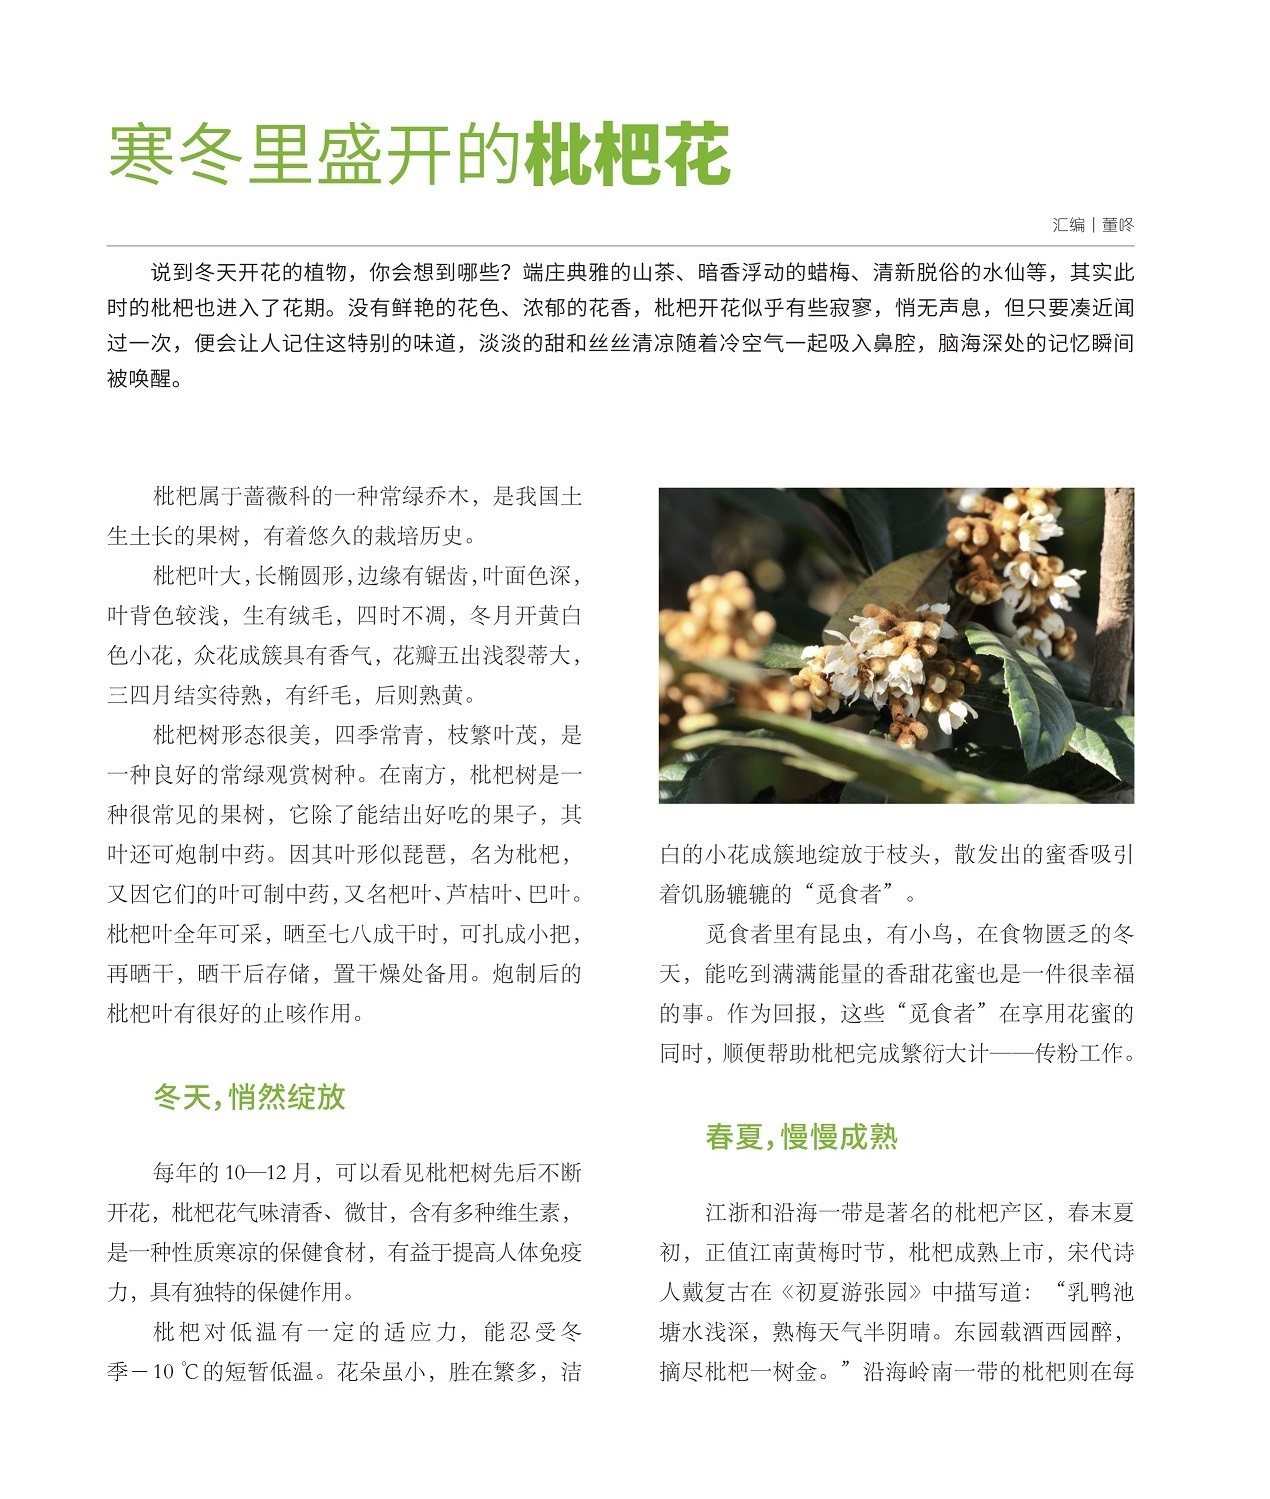 枇杷属于蔷薇科的一种常绿乔木,江浙和沿海一带是著名的枇杷产区